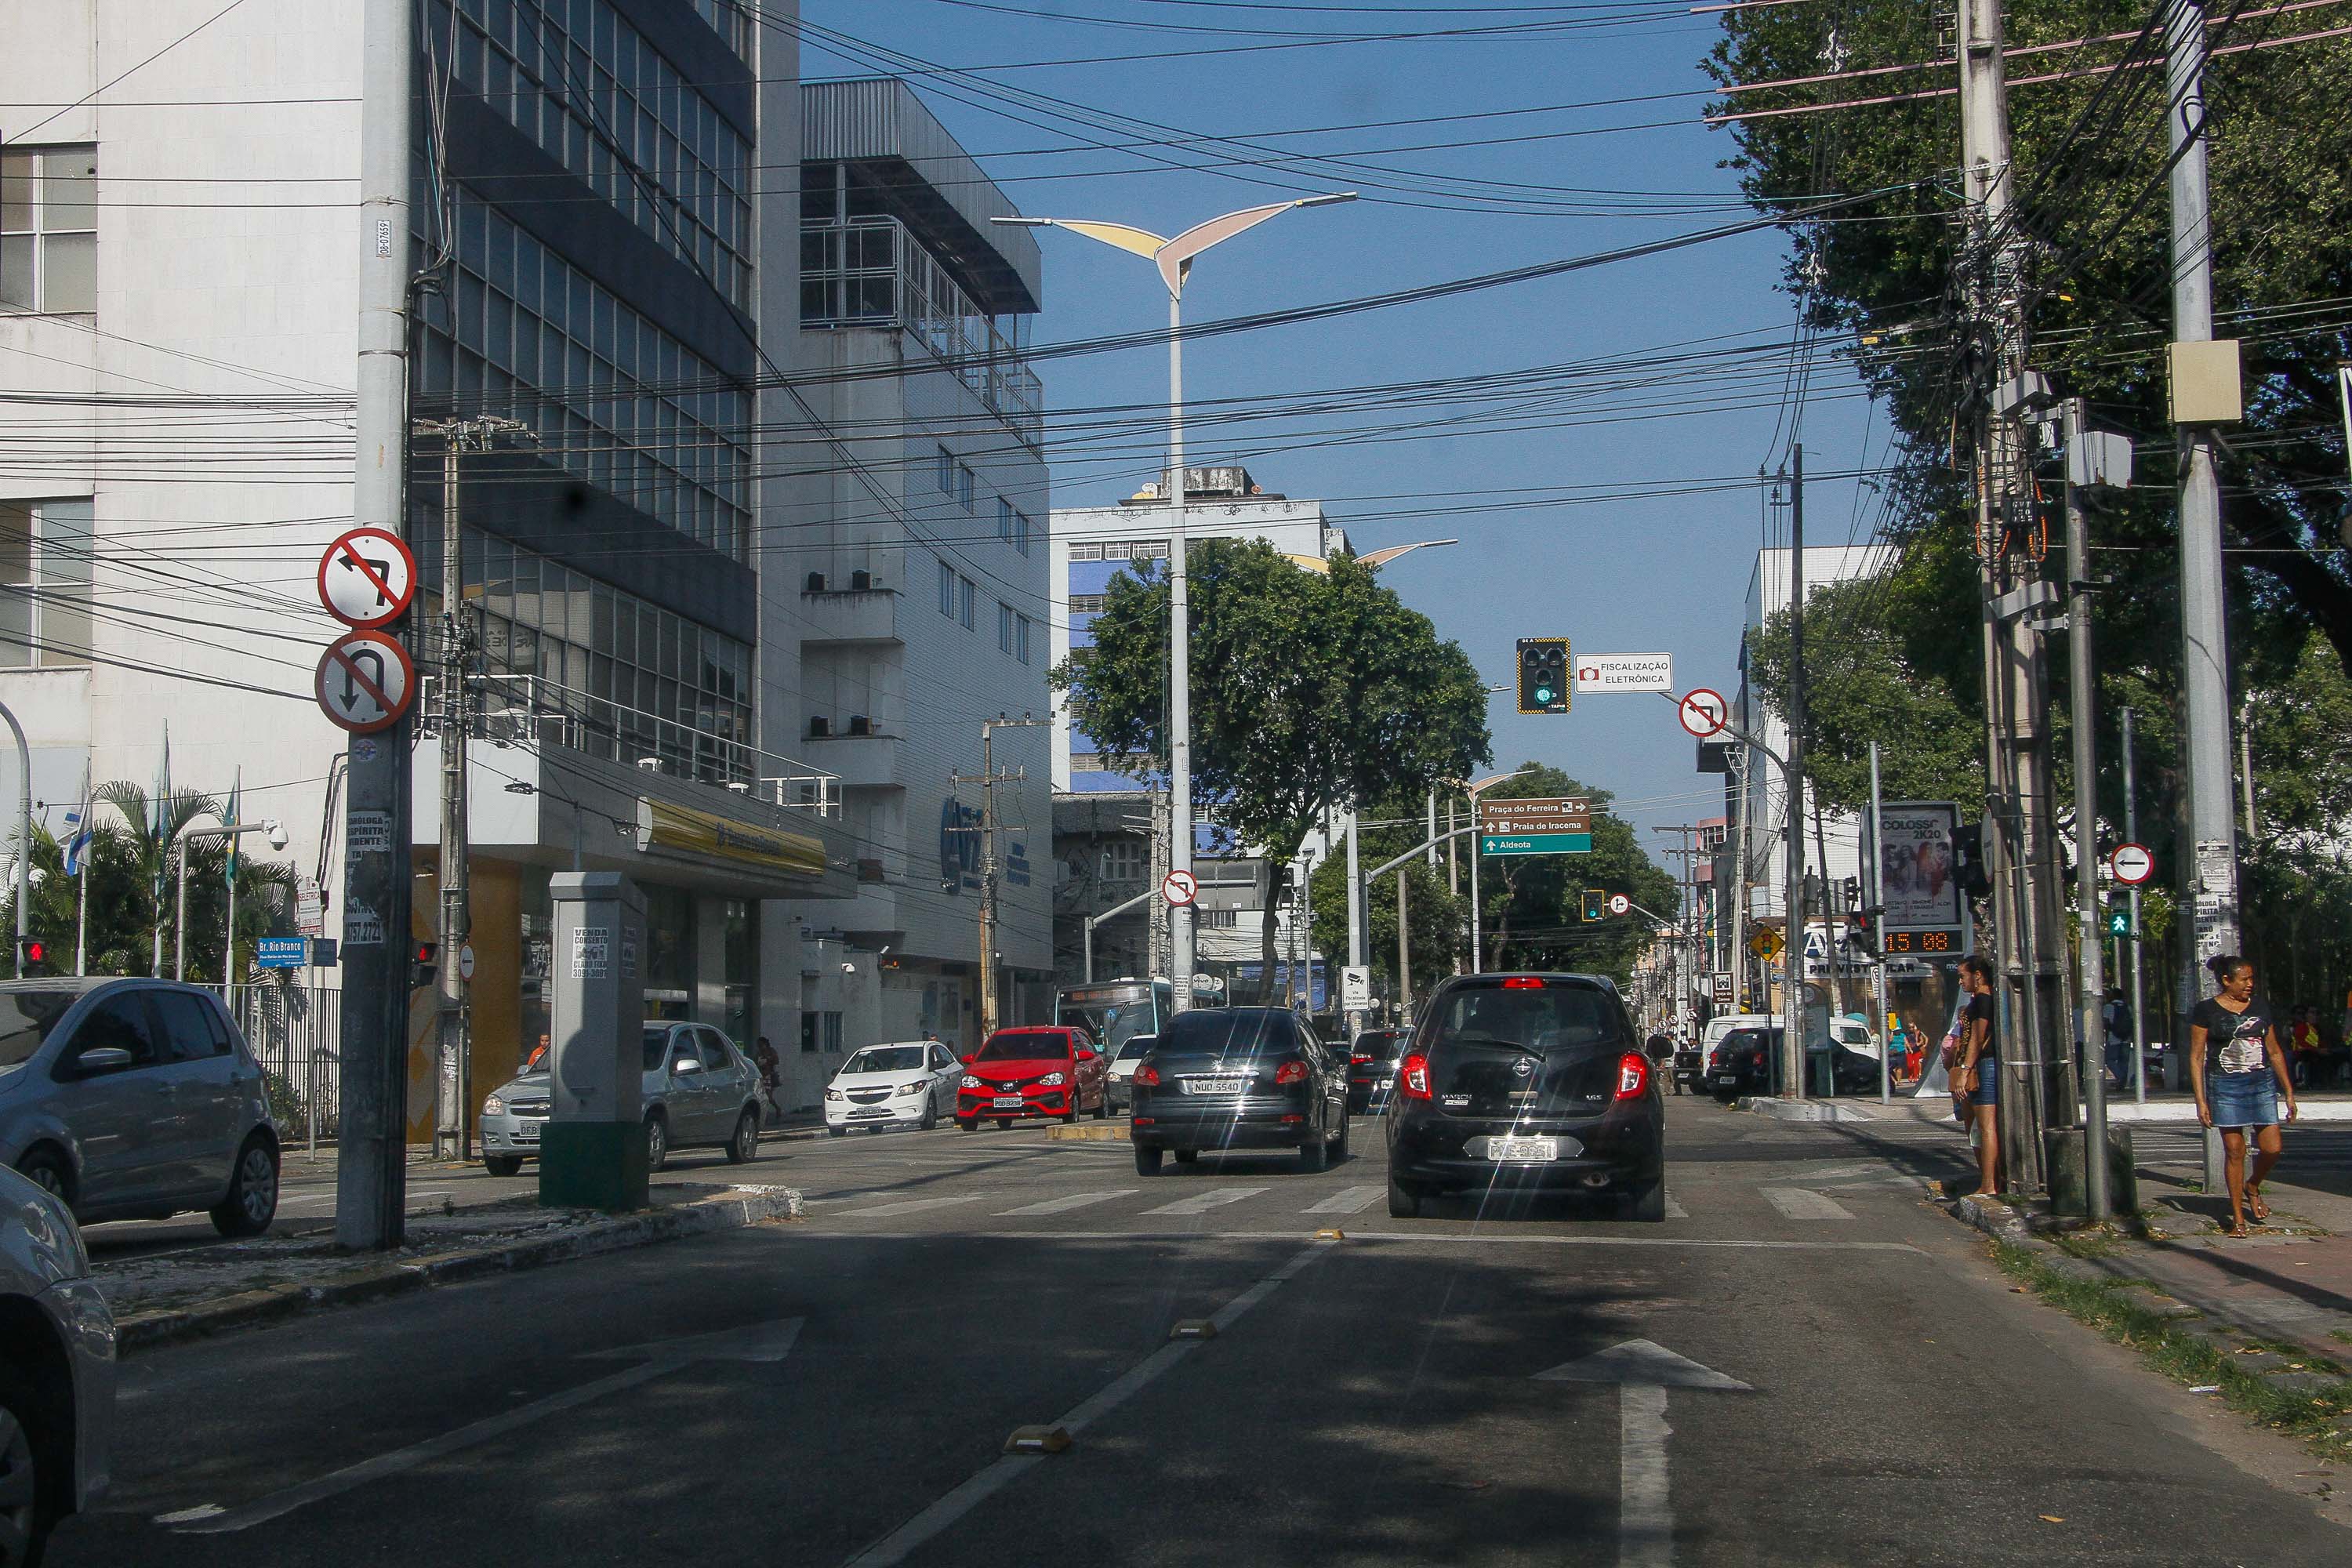 Avenida com canteiro central, carros circulando e semáforo verde